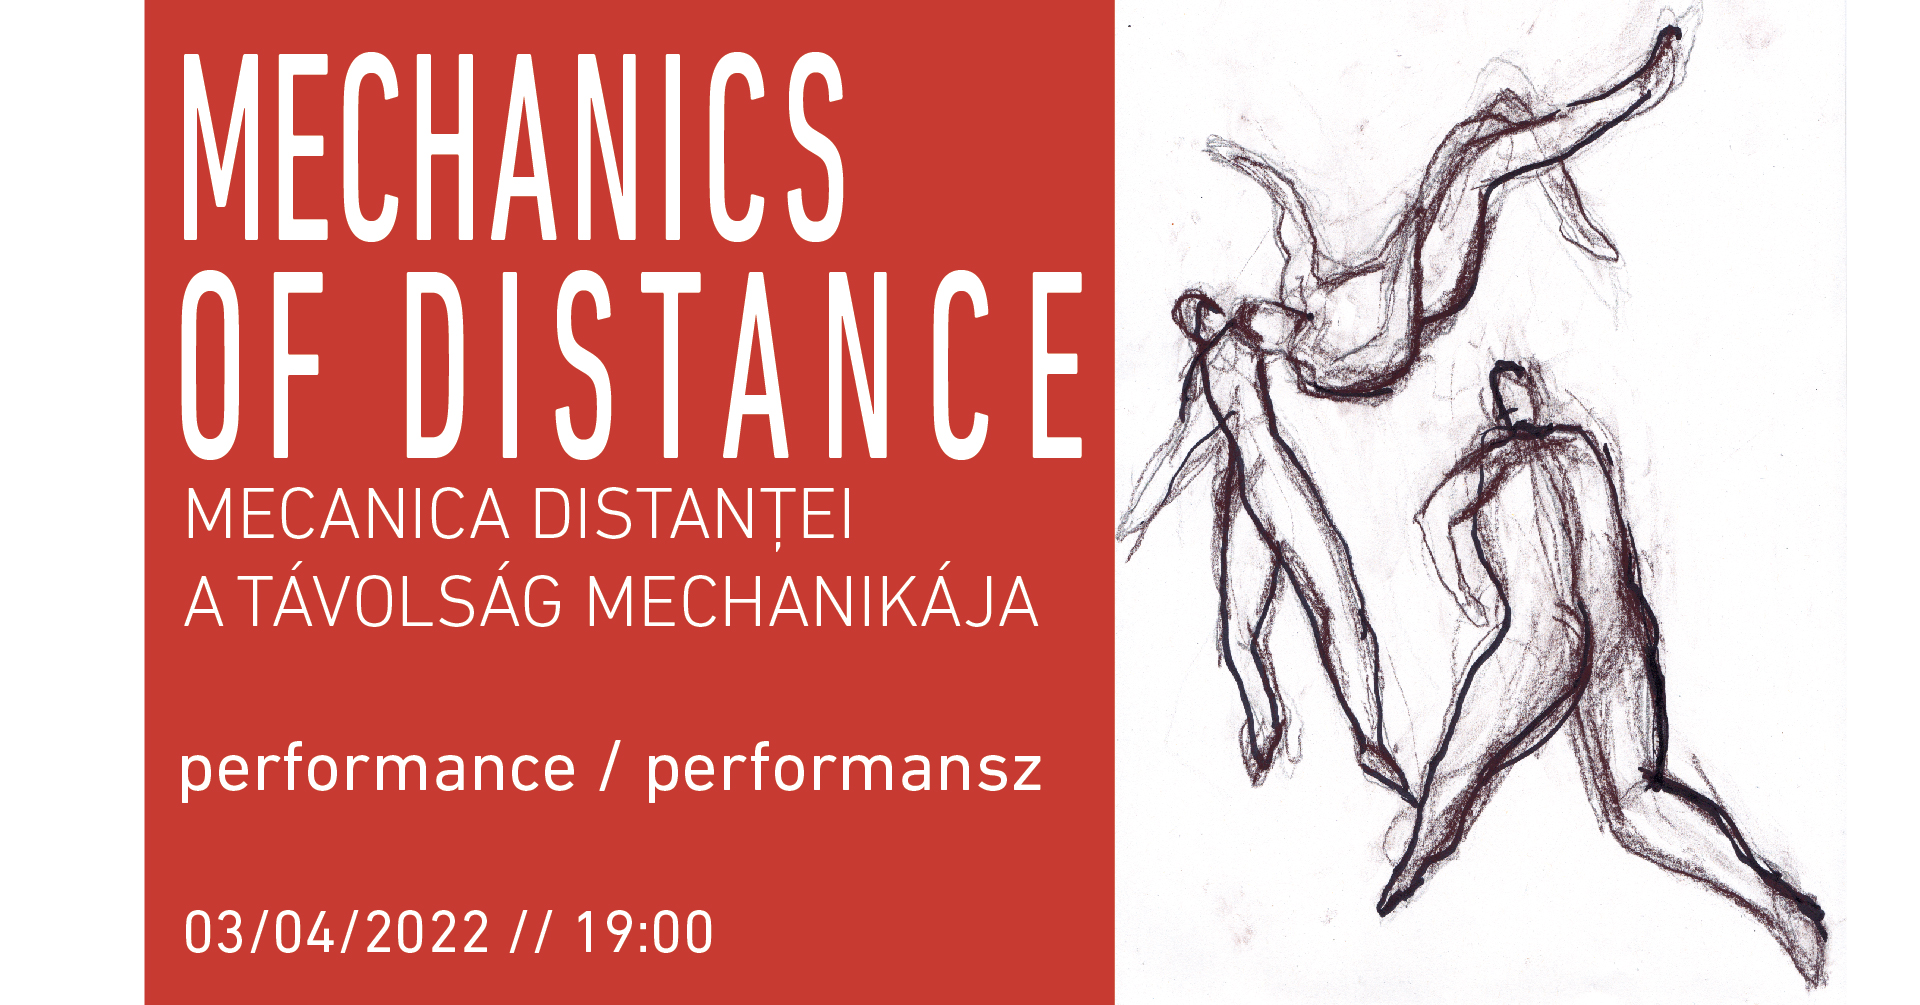 Áprilisban útnak indul A távolság mechanikája turnéja a Perform Europe program keretében / április 1-2-3 @Kolozsvár